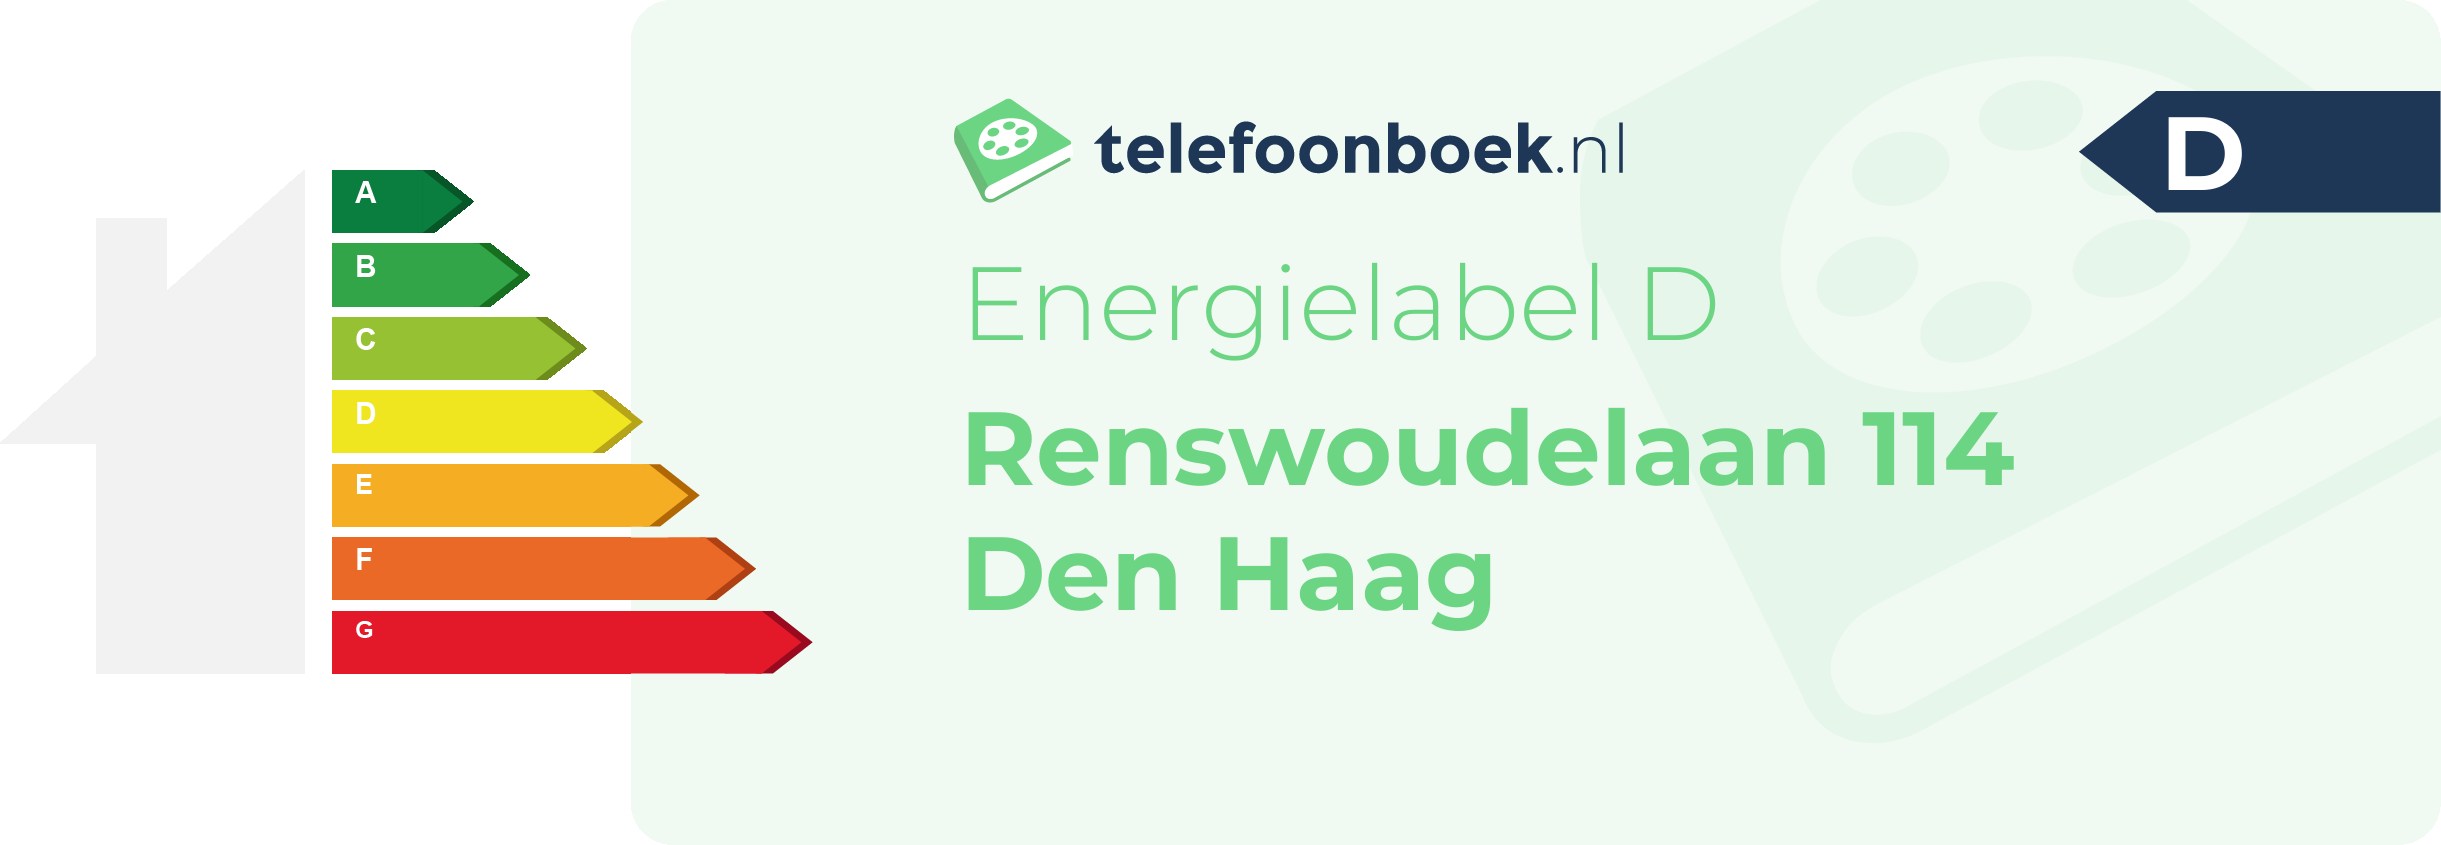 Energielabel Renswoudelaan 114 Den Haag